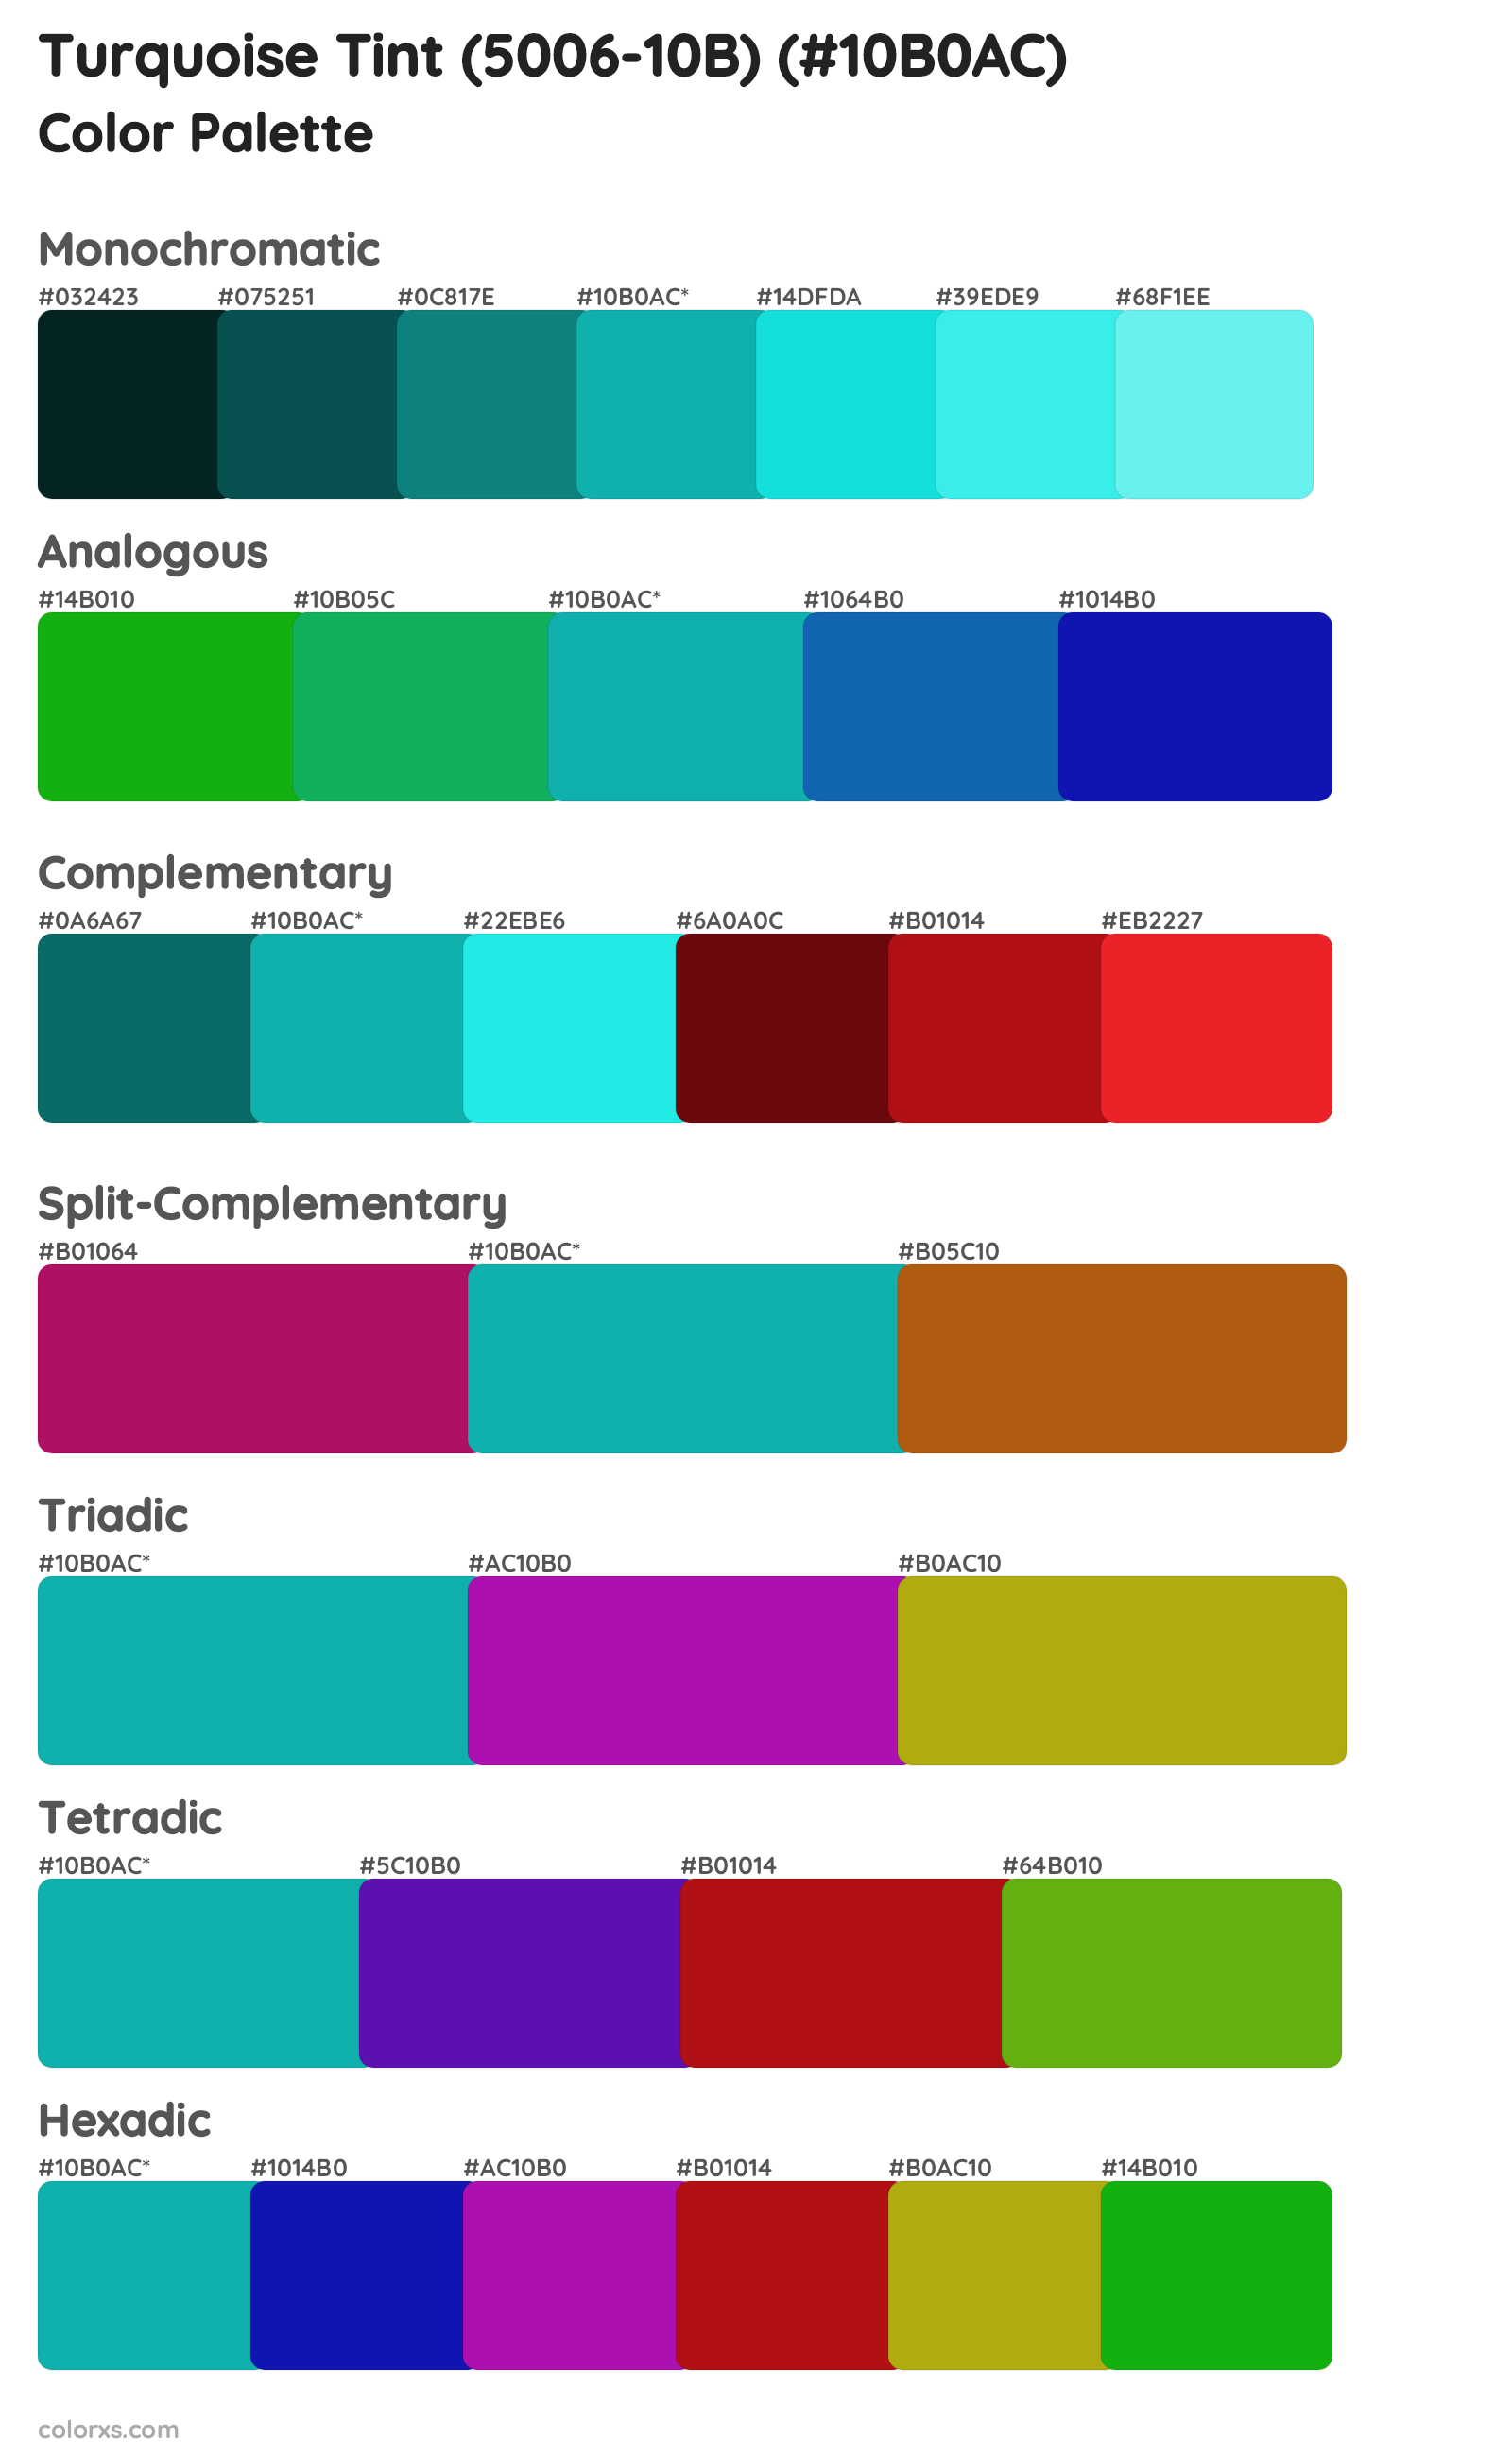 Turquoise Tint (5006-10B) Color Scheme Palettes